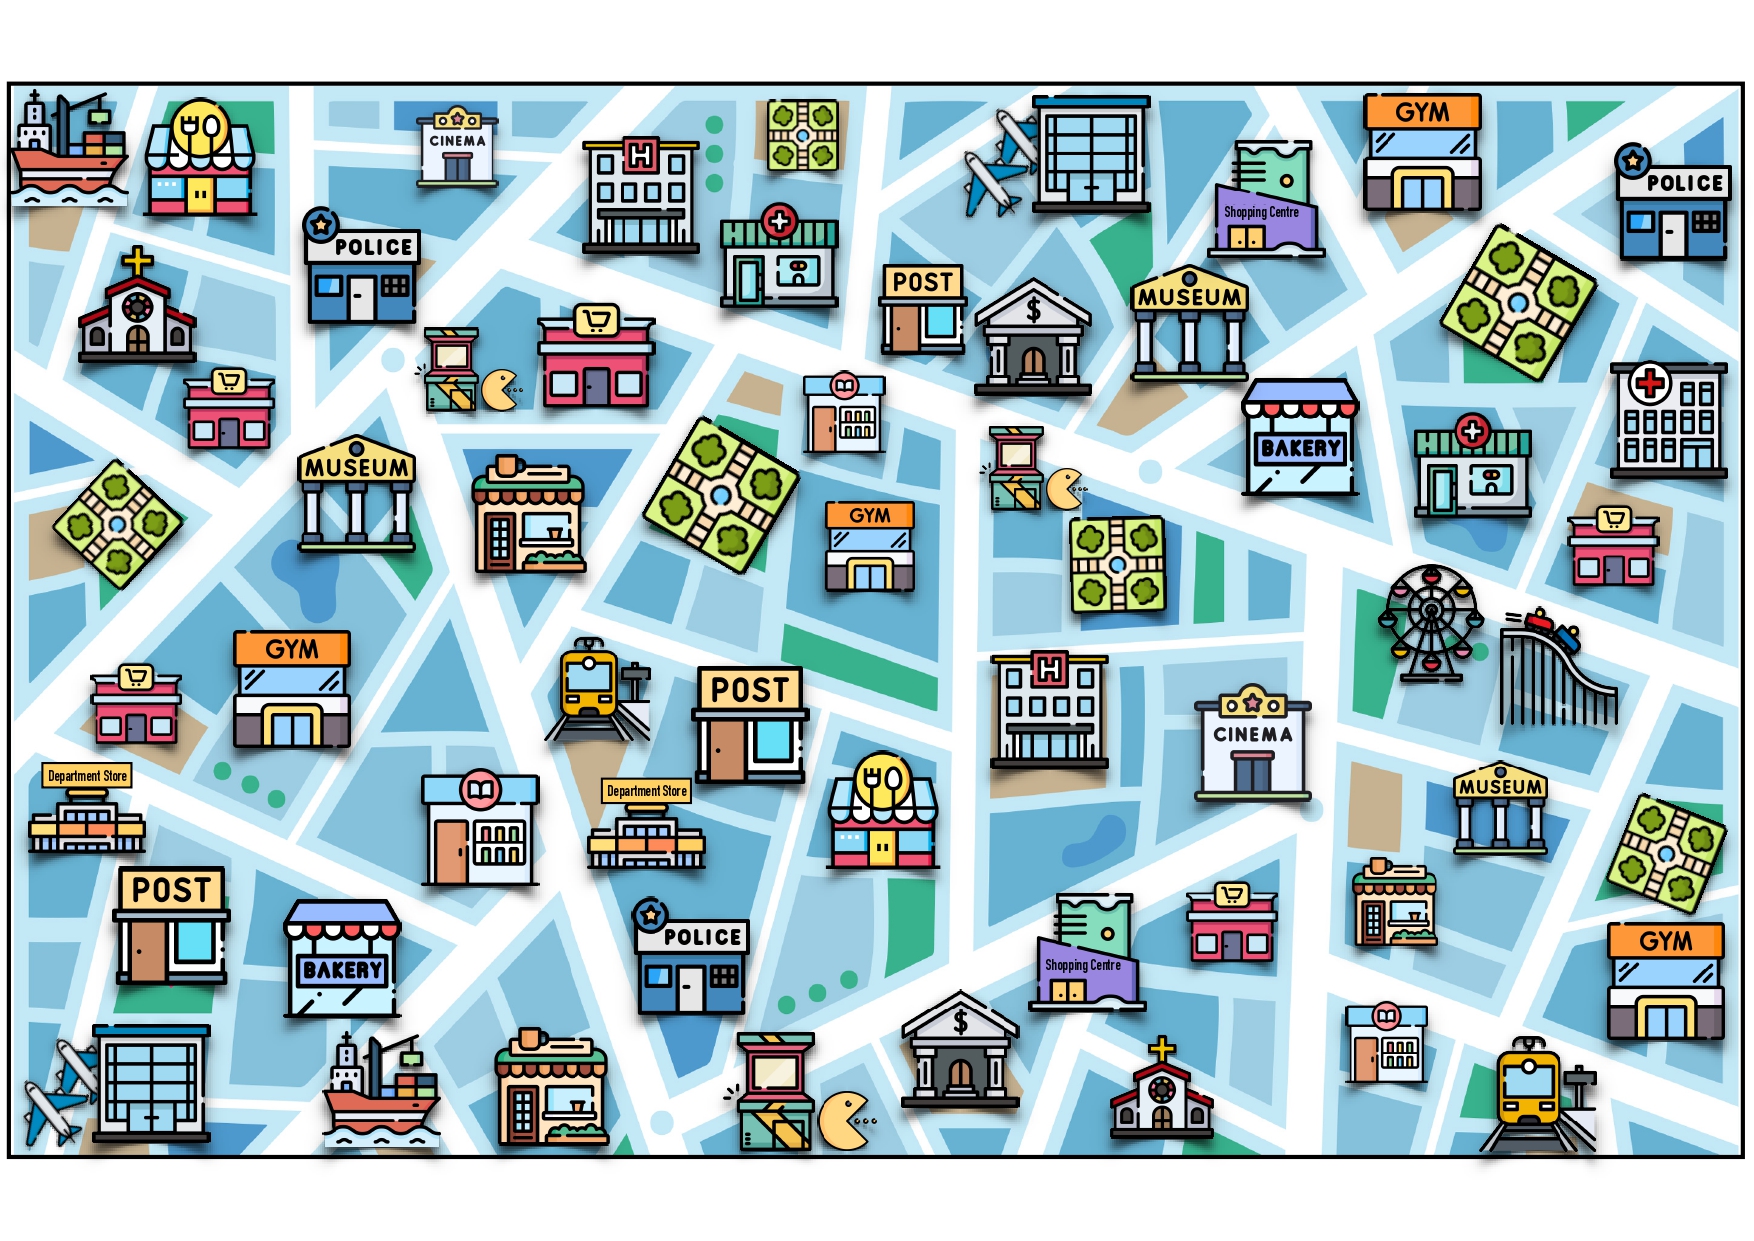 La imagen muestra un mapa de ciudad del que se van a hacer las preguntas de esta actividad